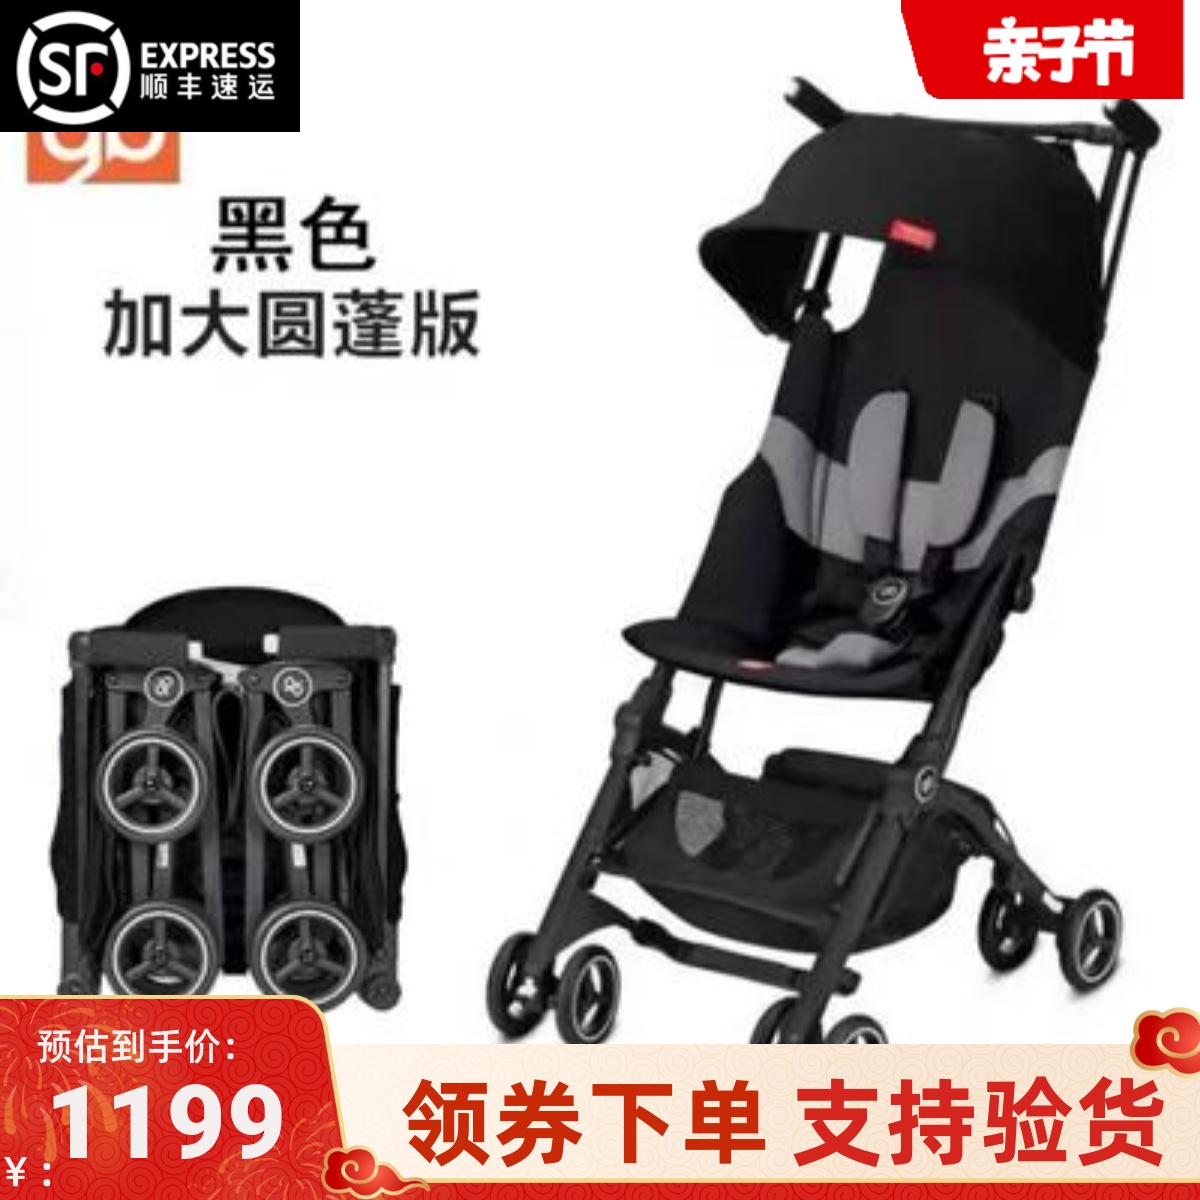 好孩子口袋车国际版POCKIT+可坐可躺登机婴儿推车超轻便携折叠伞